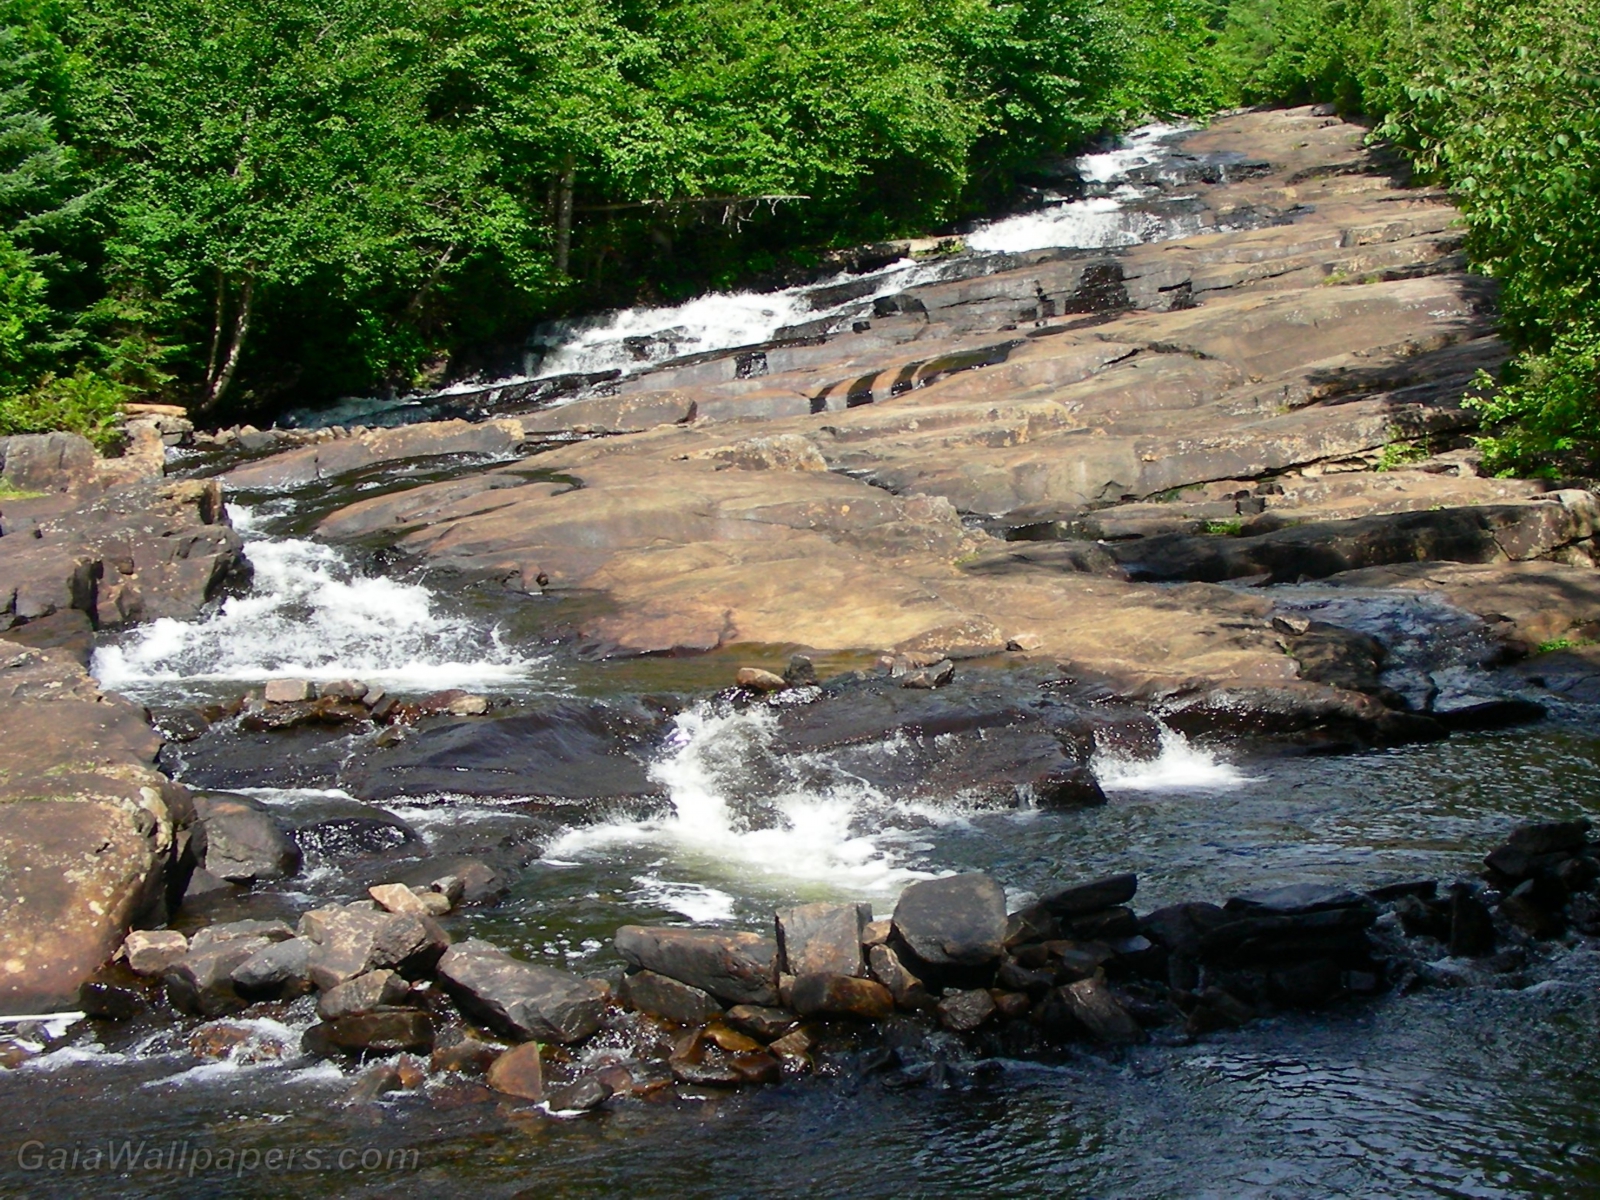 Cascades de ruisseau sur les rochers - Fonds d'écran gratuits